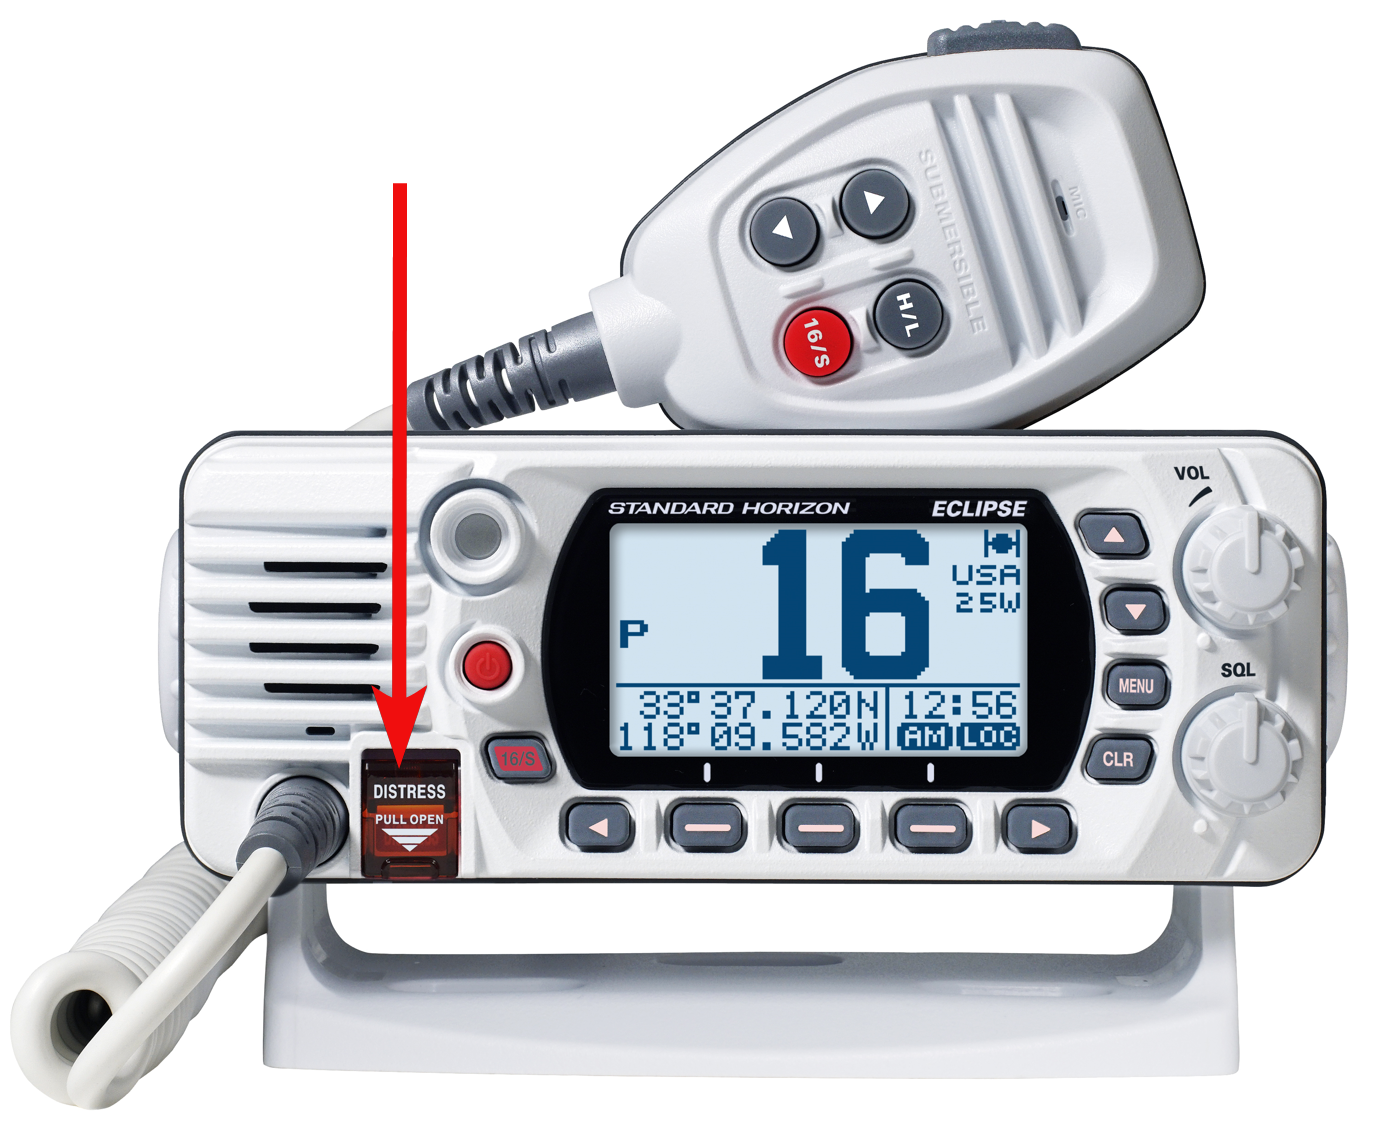 DSC distress knap på VHF radio